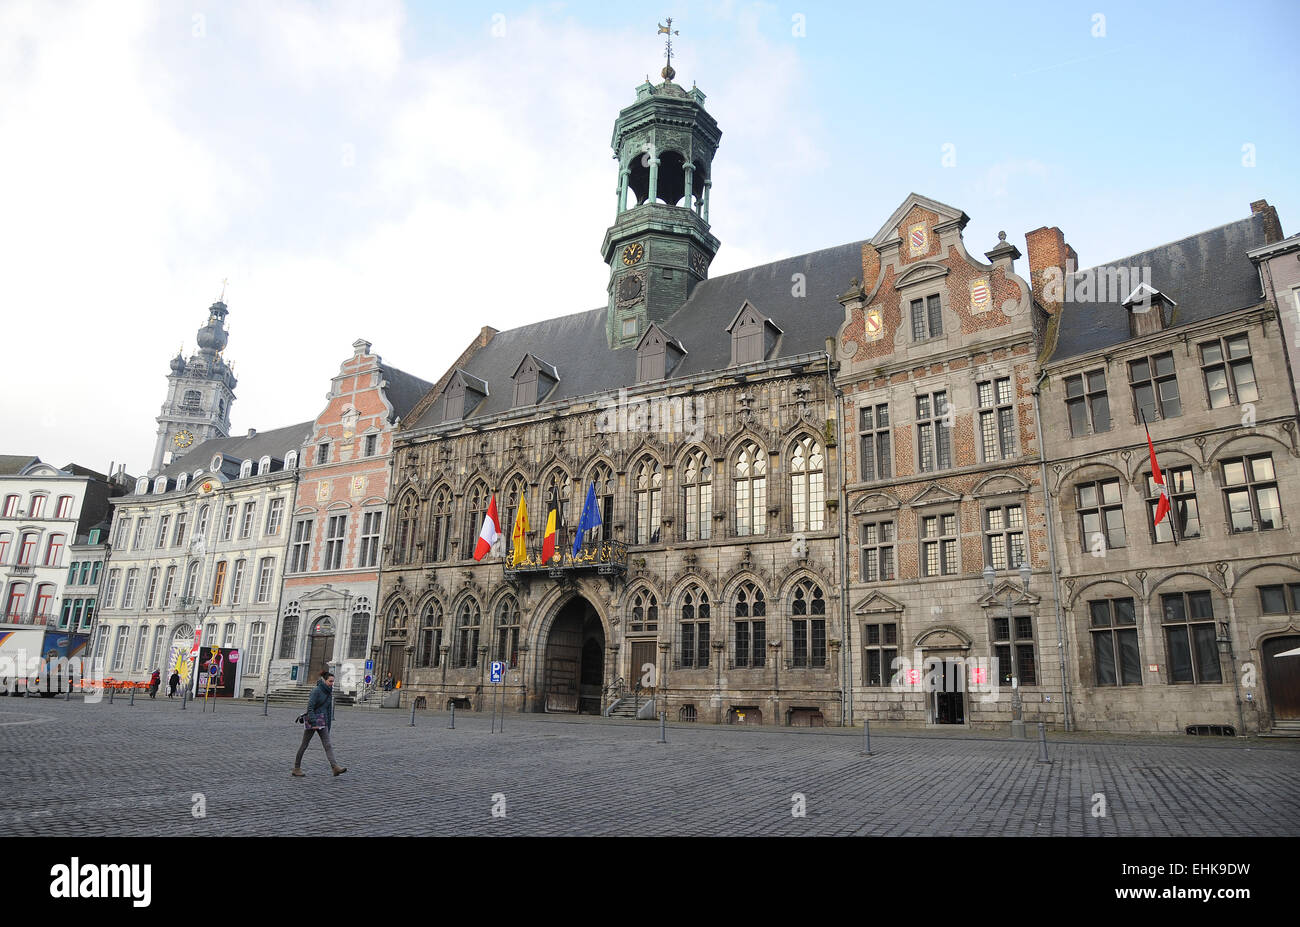 Der alte Platz der Grand Place und das gotische Rathaus mit Renaissance Periode Glockenturm. Mons, Belgien Kulturstadt Stockfoto